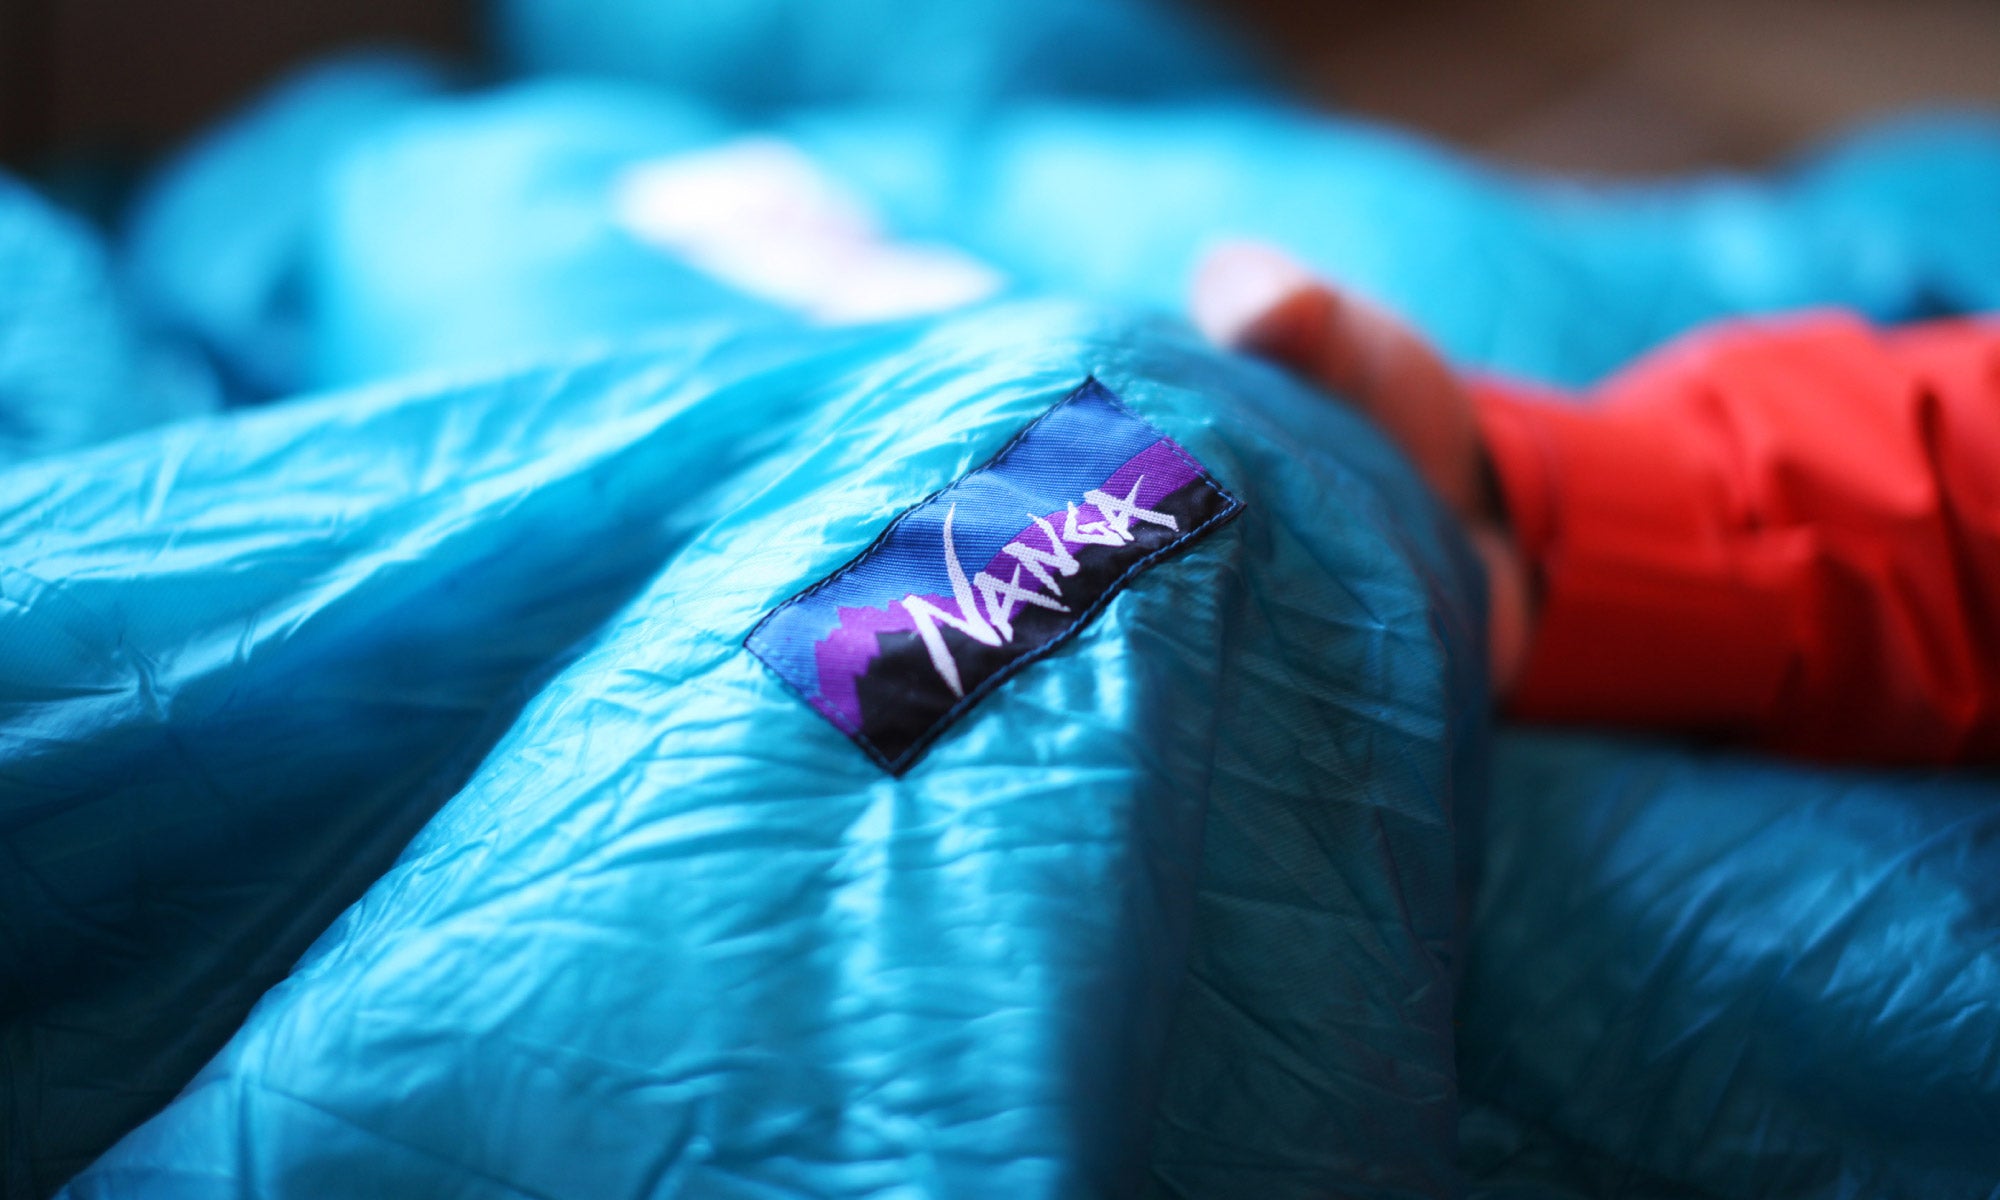 Nanga Sleeping Bag and Label